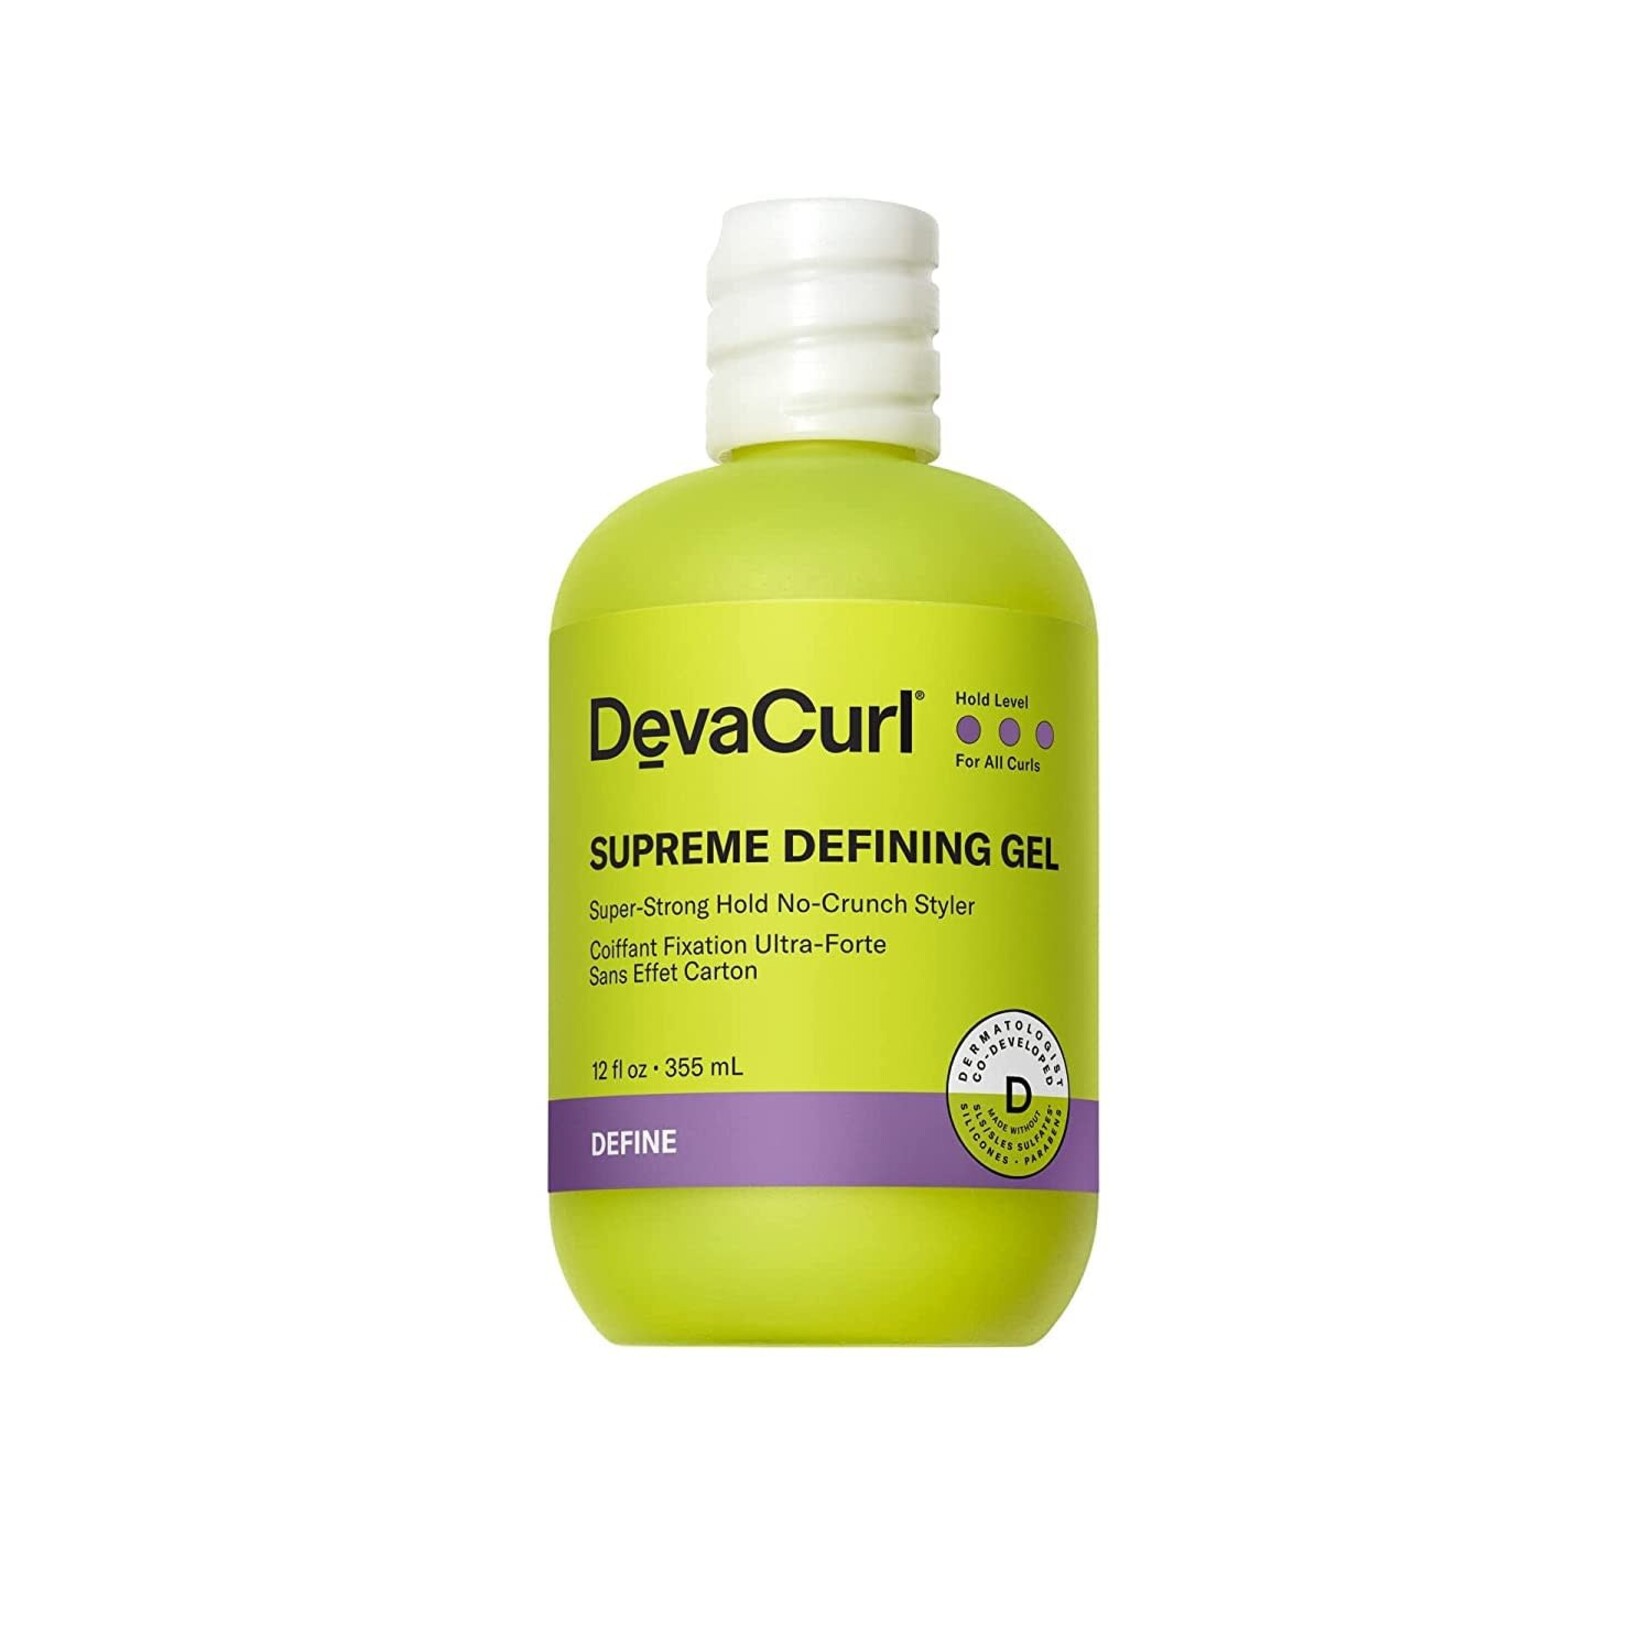 DevaCurl DevaCurl - Supreme defining gel 355ml